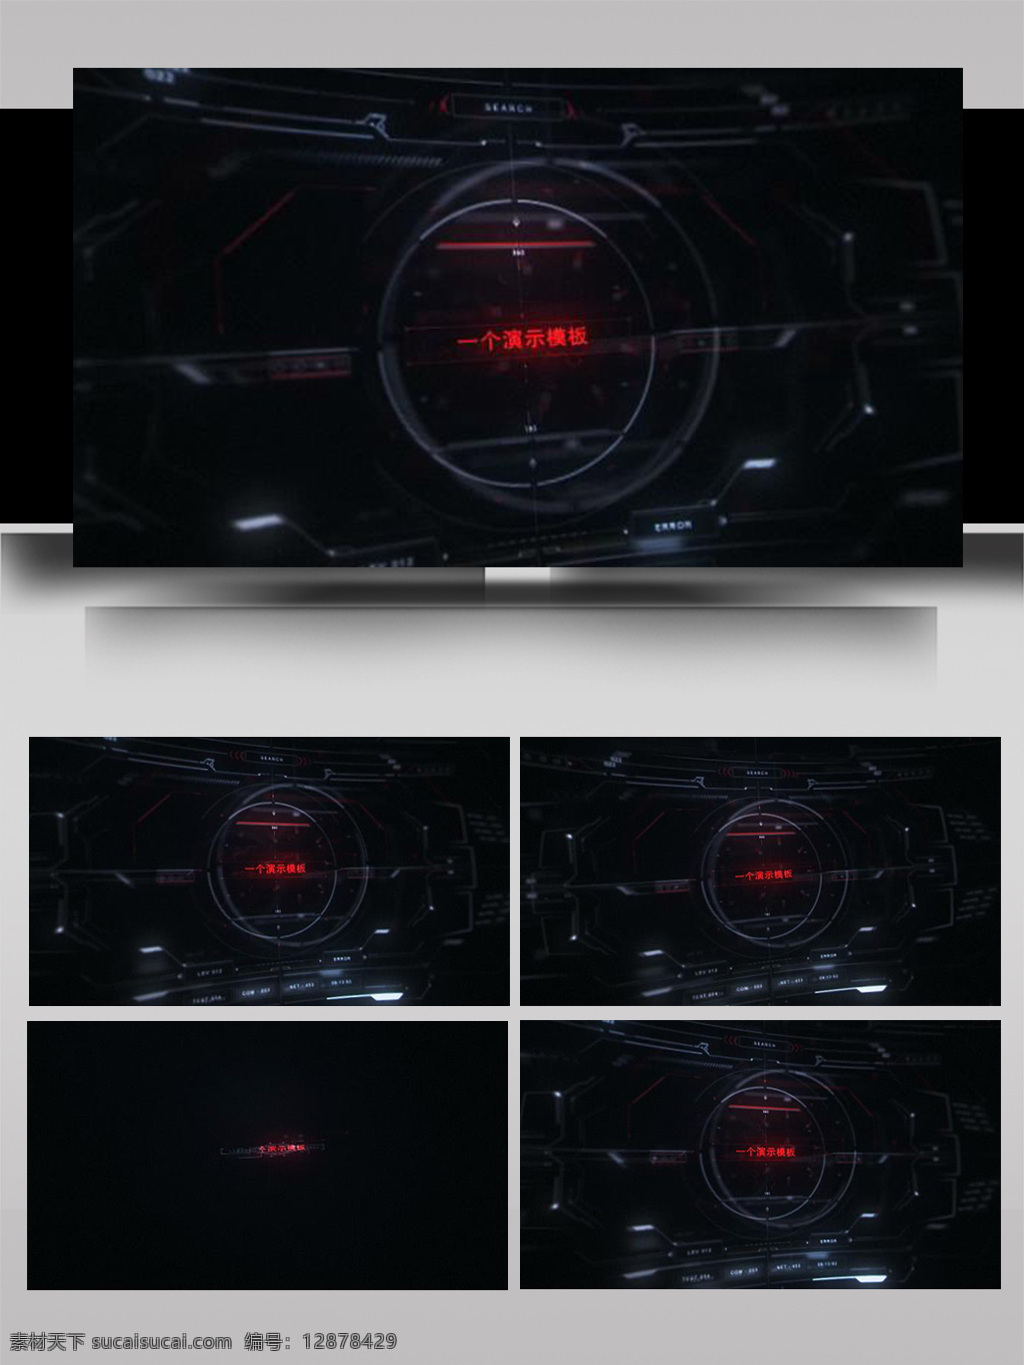 高科技 屏幕 信息 图表 ae 模板 立体 旋转 光影 展示 3d标志 杂色 故障 散开 组合 动态 电视屏幕 晃动 噪点 片头 转场 过度